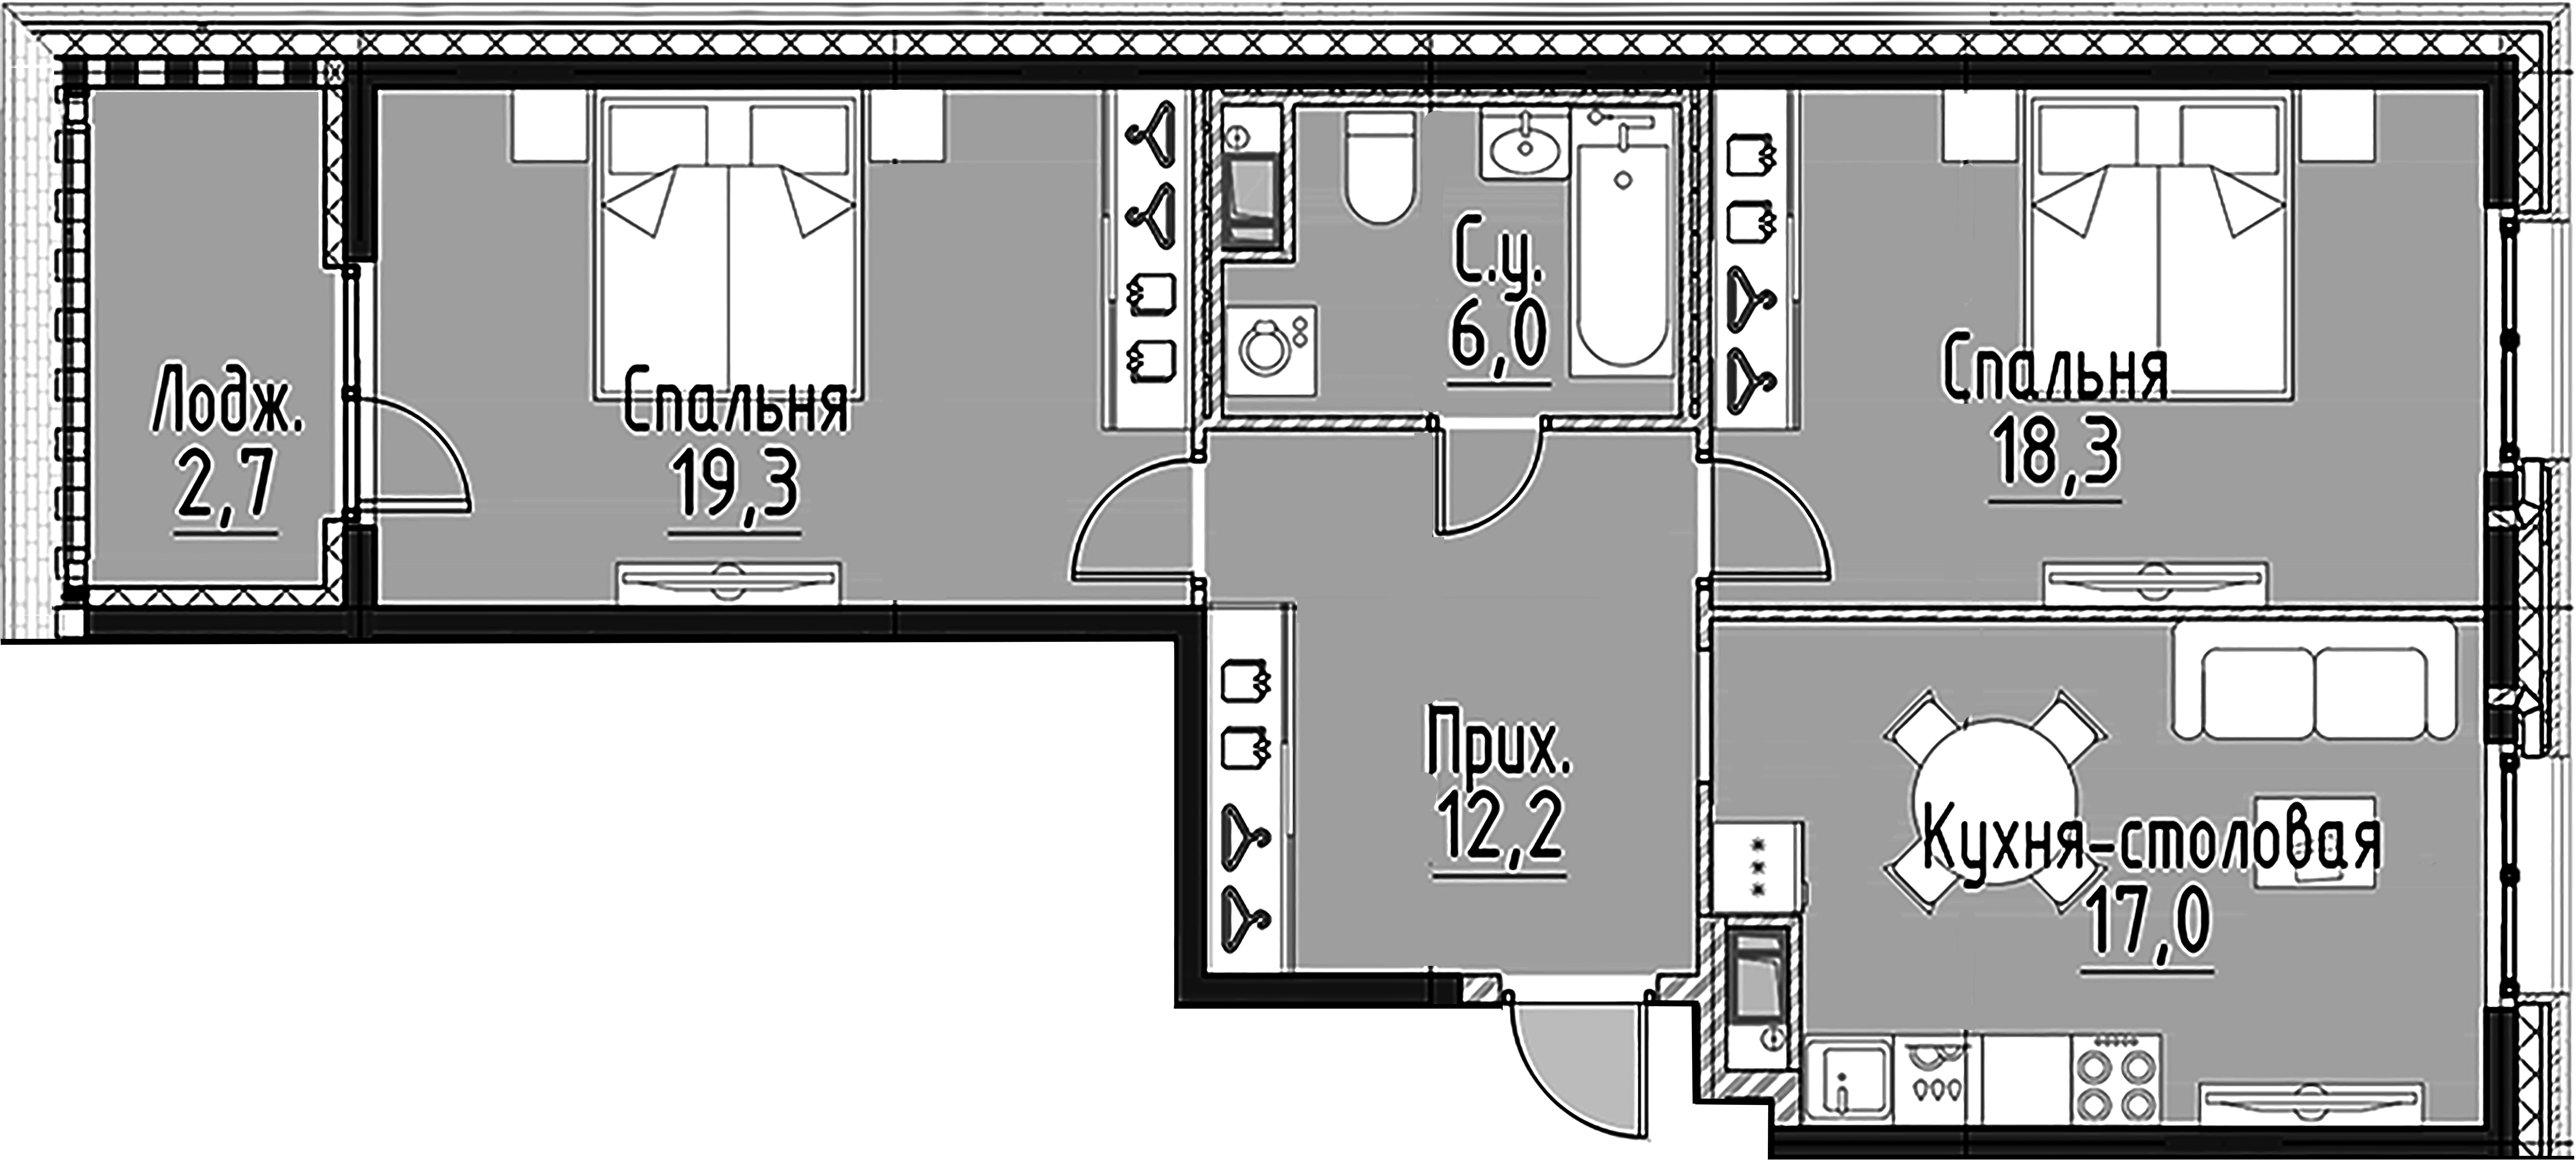 2-комнатная квартира, 72.6 м²; этаж: 6 - купить в Санкт-Петербурге